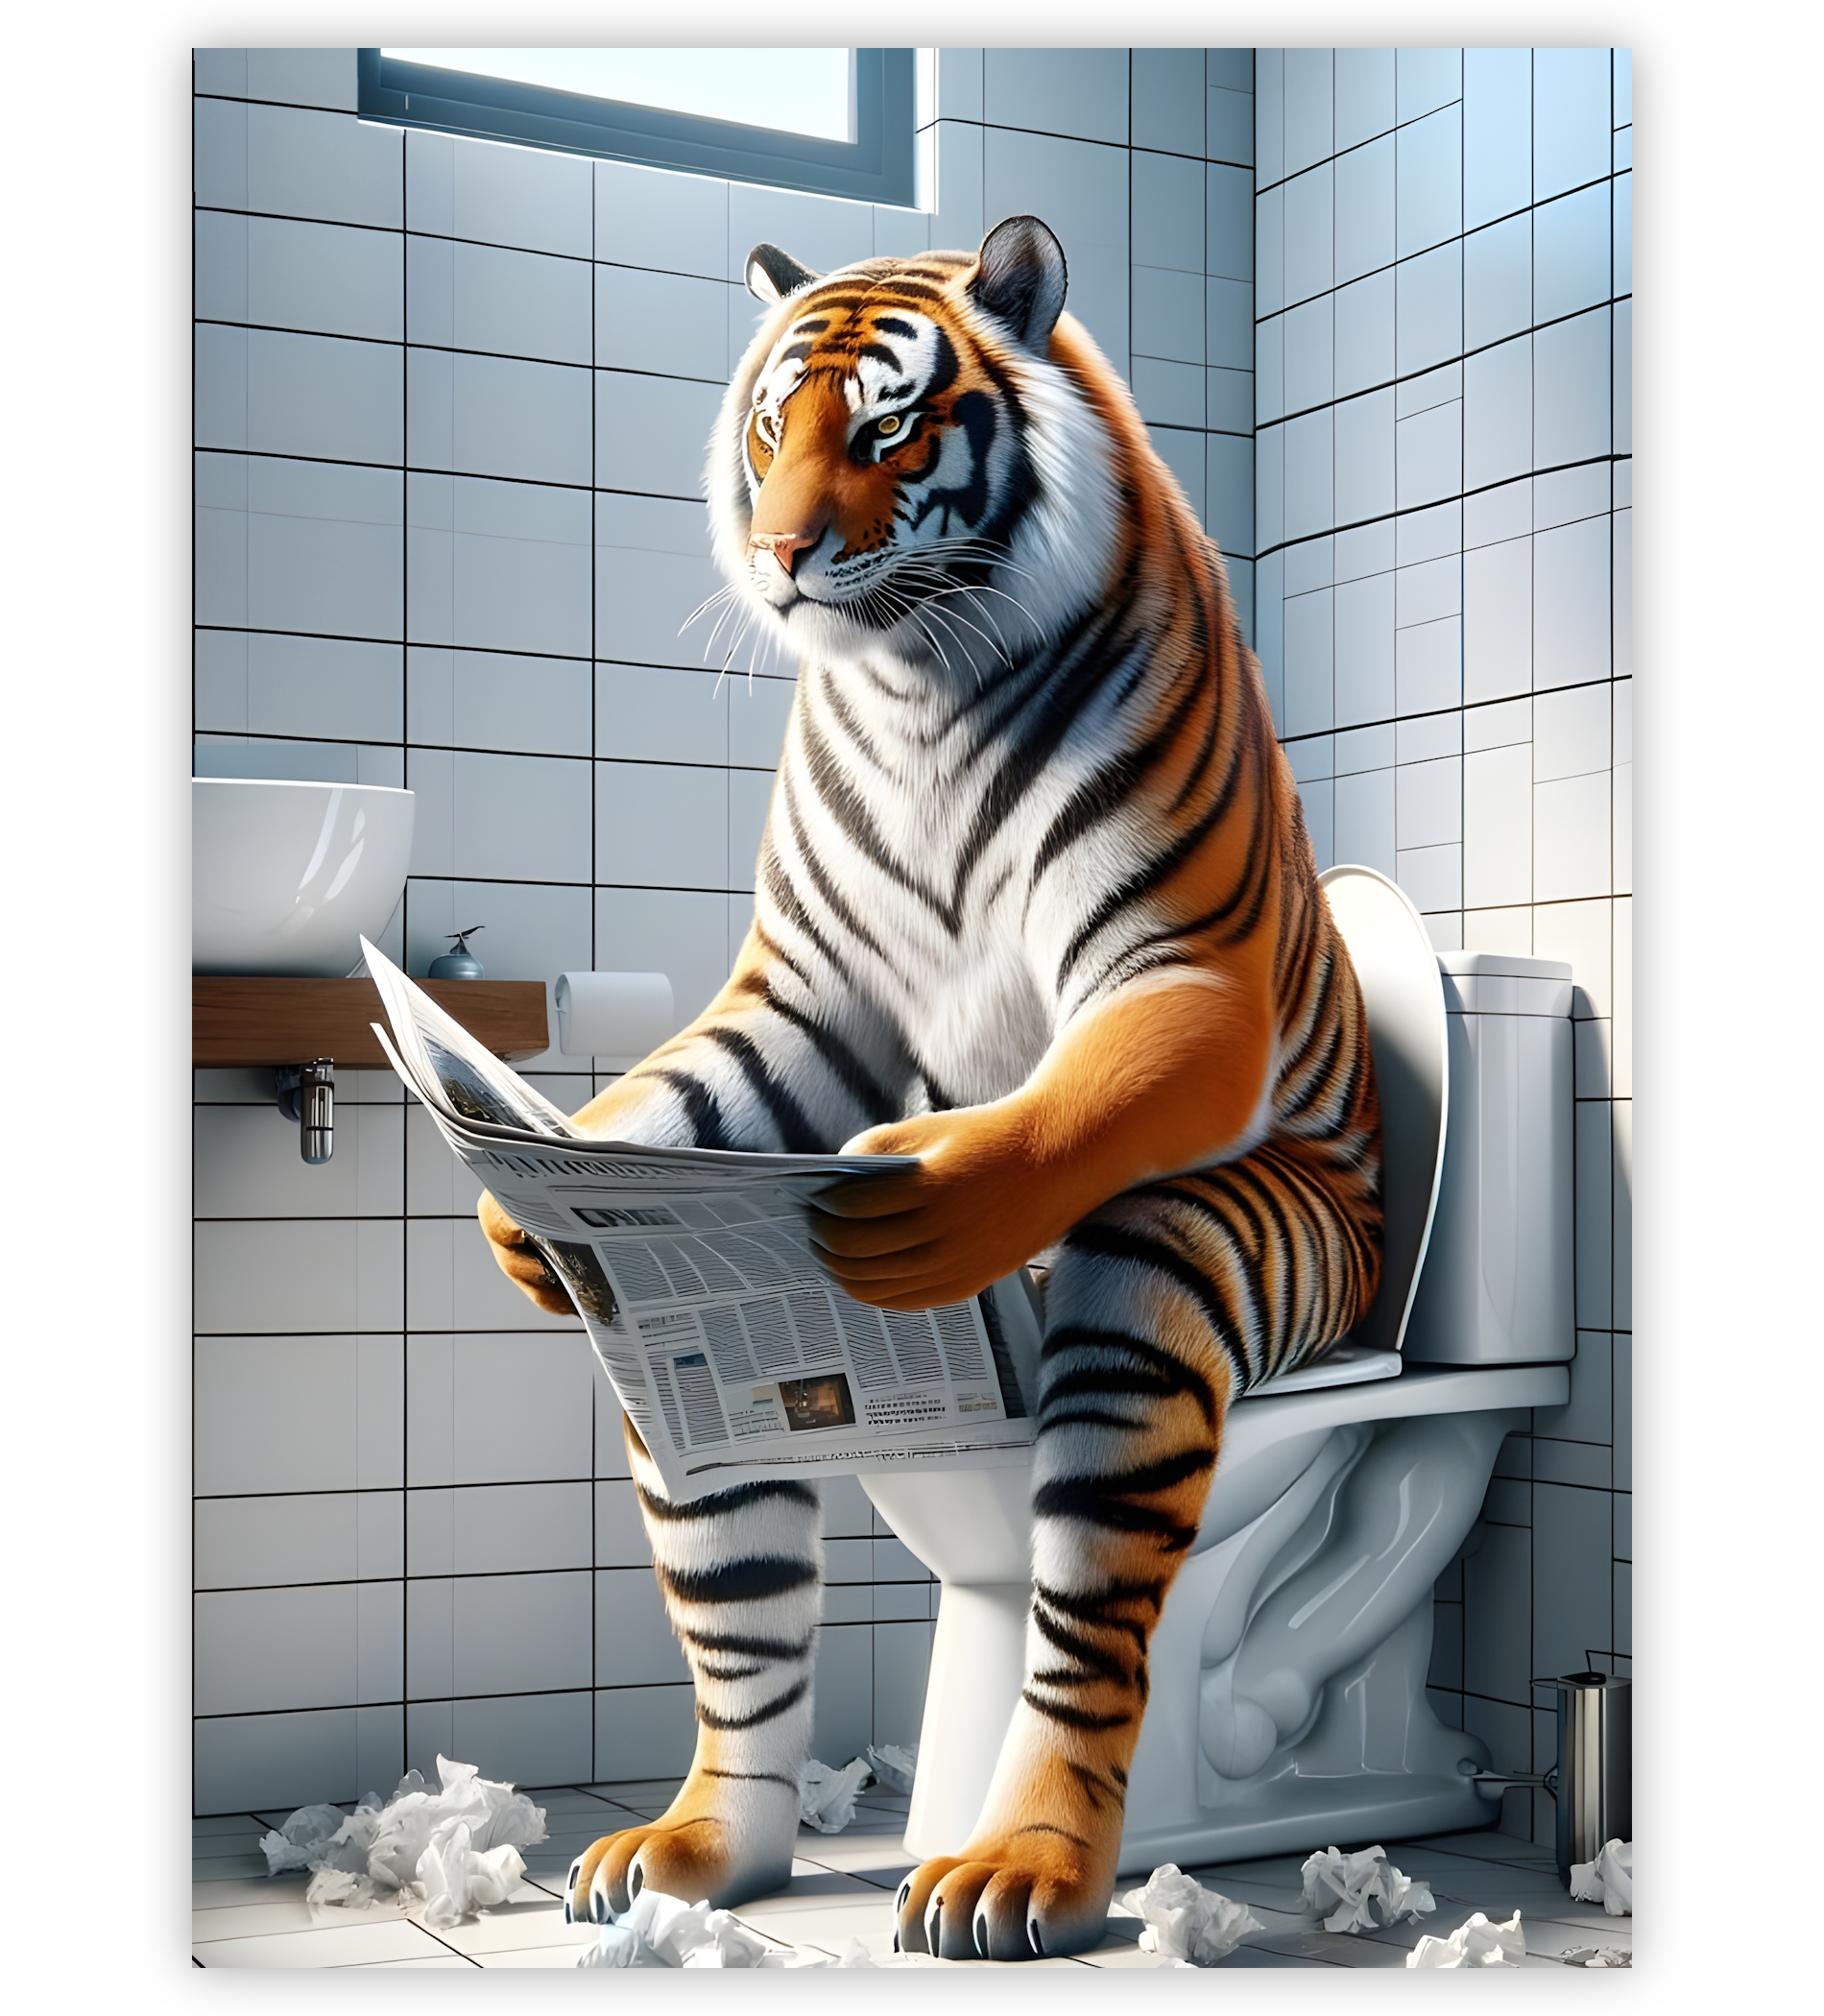 Poster, Wandbild von Tiger auf Toilette